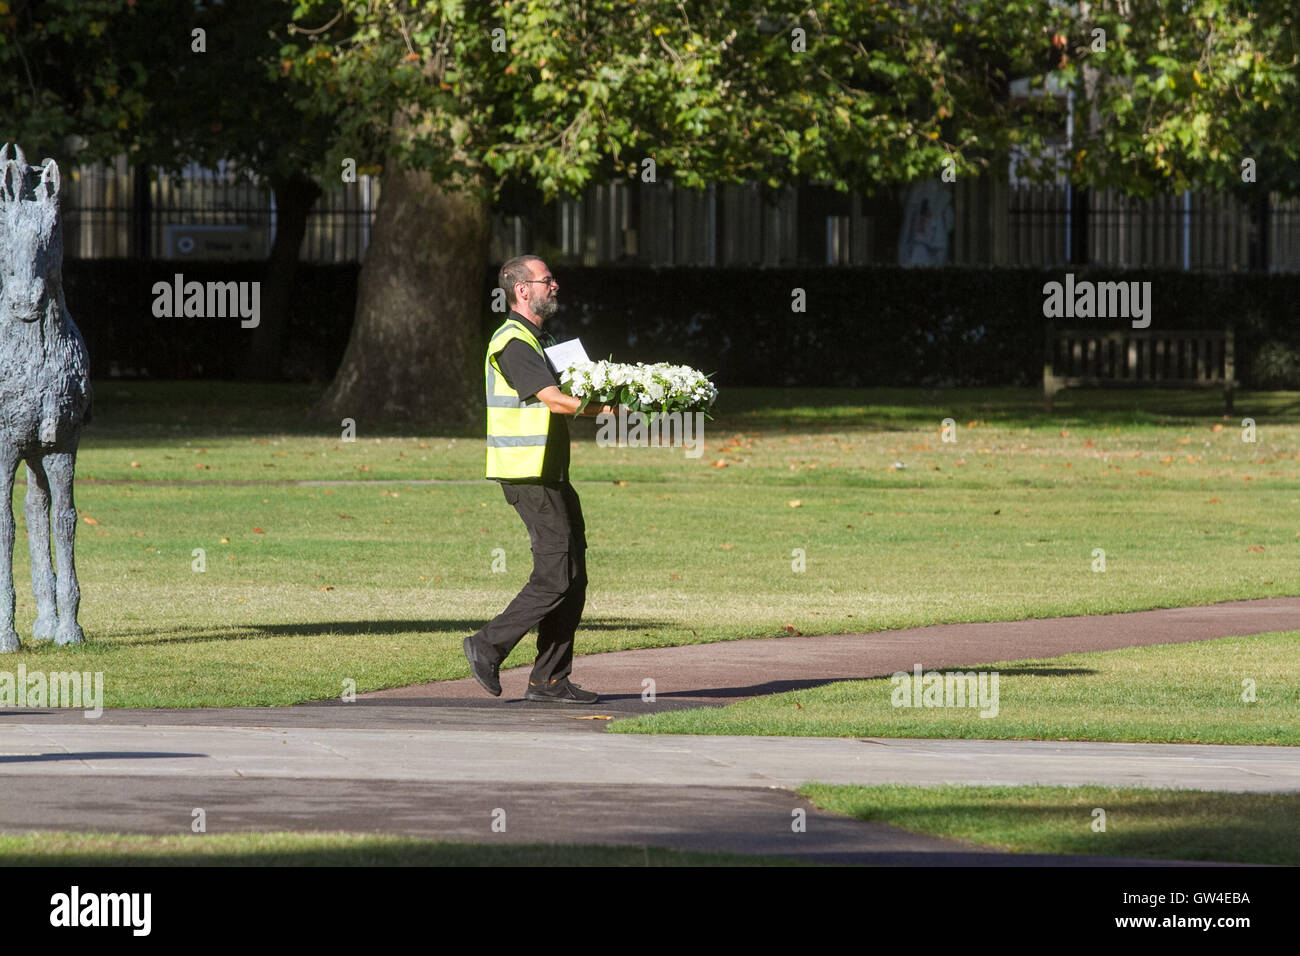 Londres, Royaume-Uni. Sep 11, 2016. Un homme met couronne au monument à Londres les britanniques victimes des attentats du 11 septembre à New York et Washington DC Crédit : amer ghazzal/Alamy Live News Banque D'Images